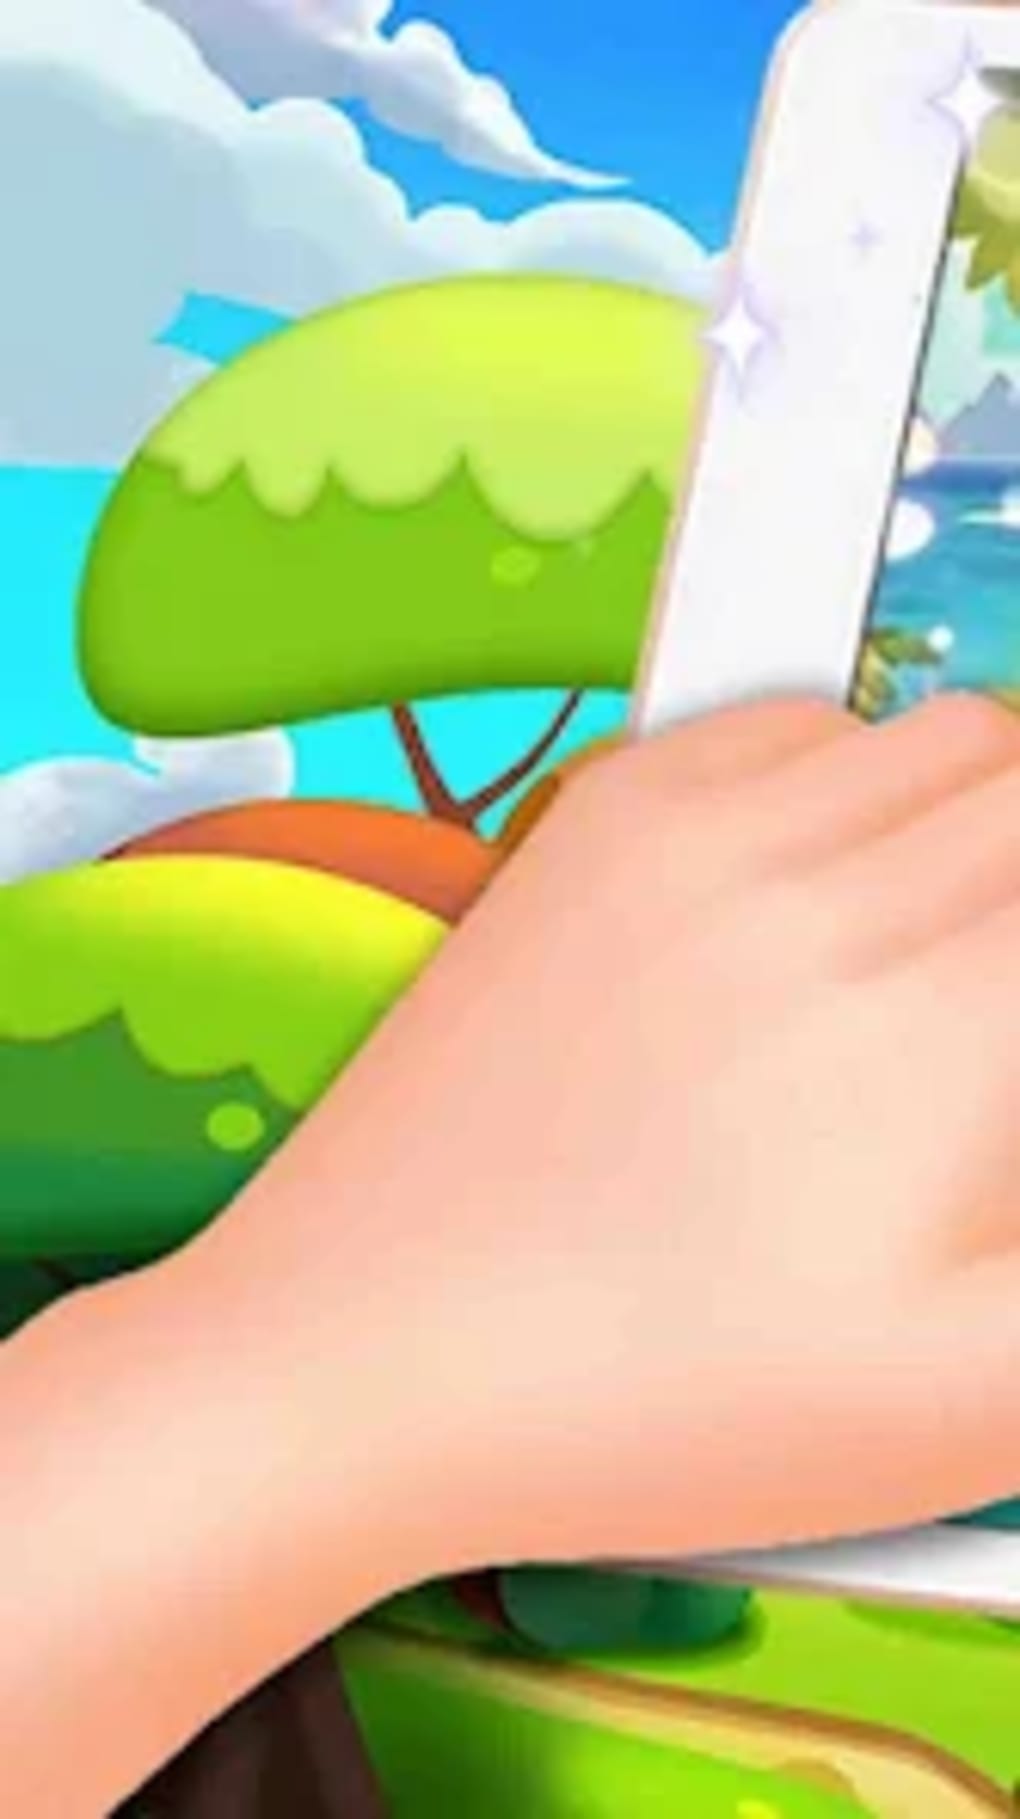 Ir a caminar intimidad admirar Solitaire Kingdom: Card Game para Android - Descargar